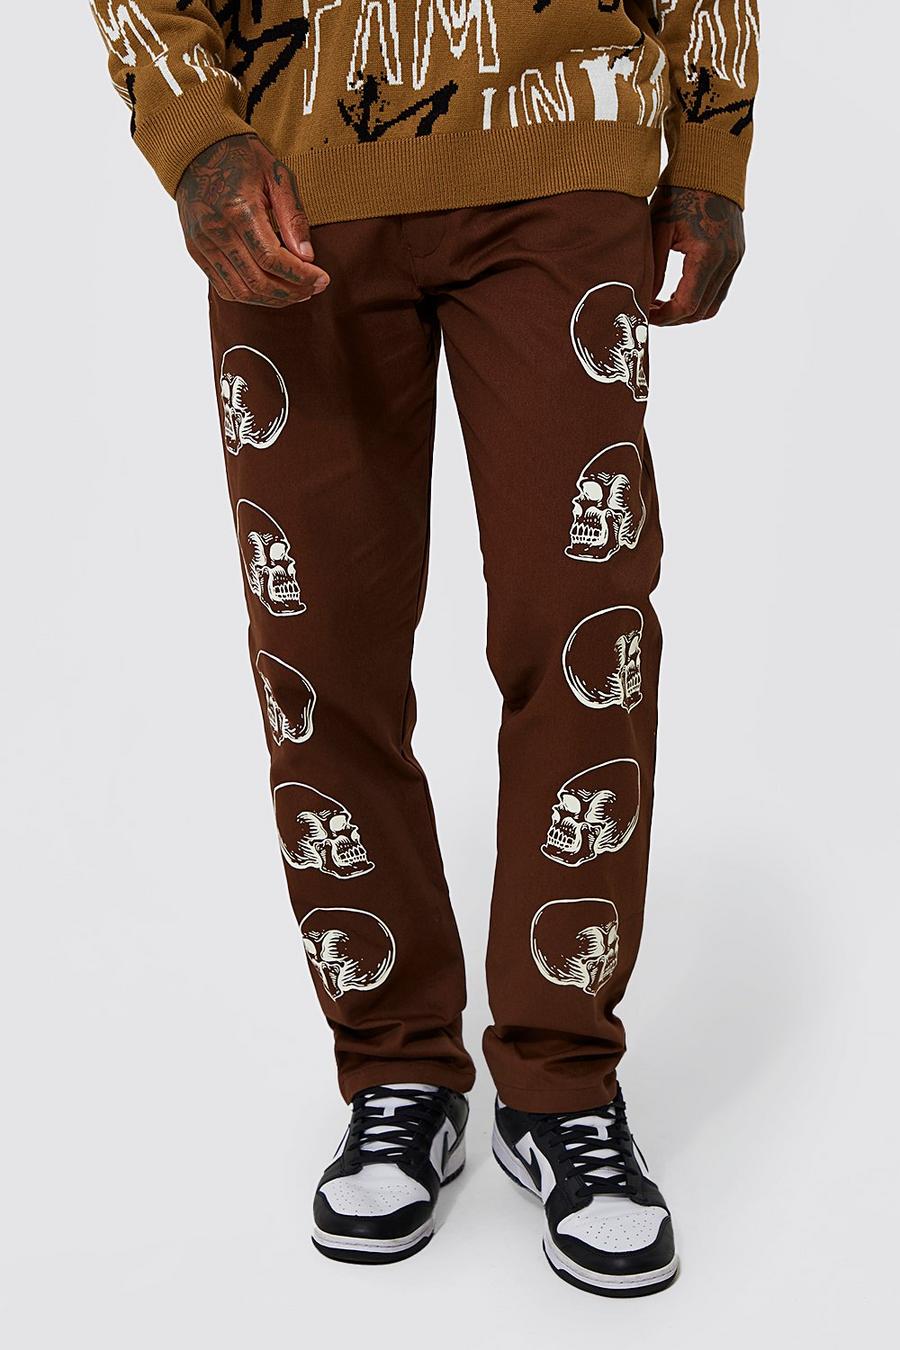 שוקולד marrón מכנסי צ'ינו בגזרה משוחררת עם הדפס  image number 1